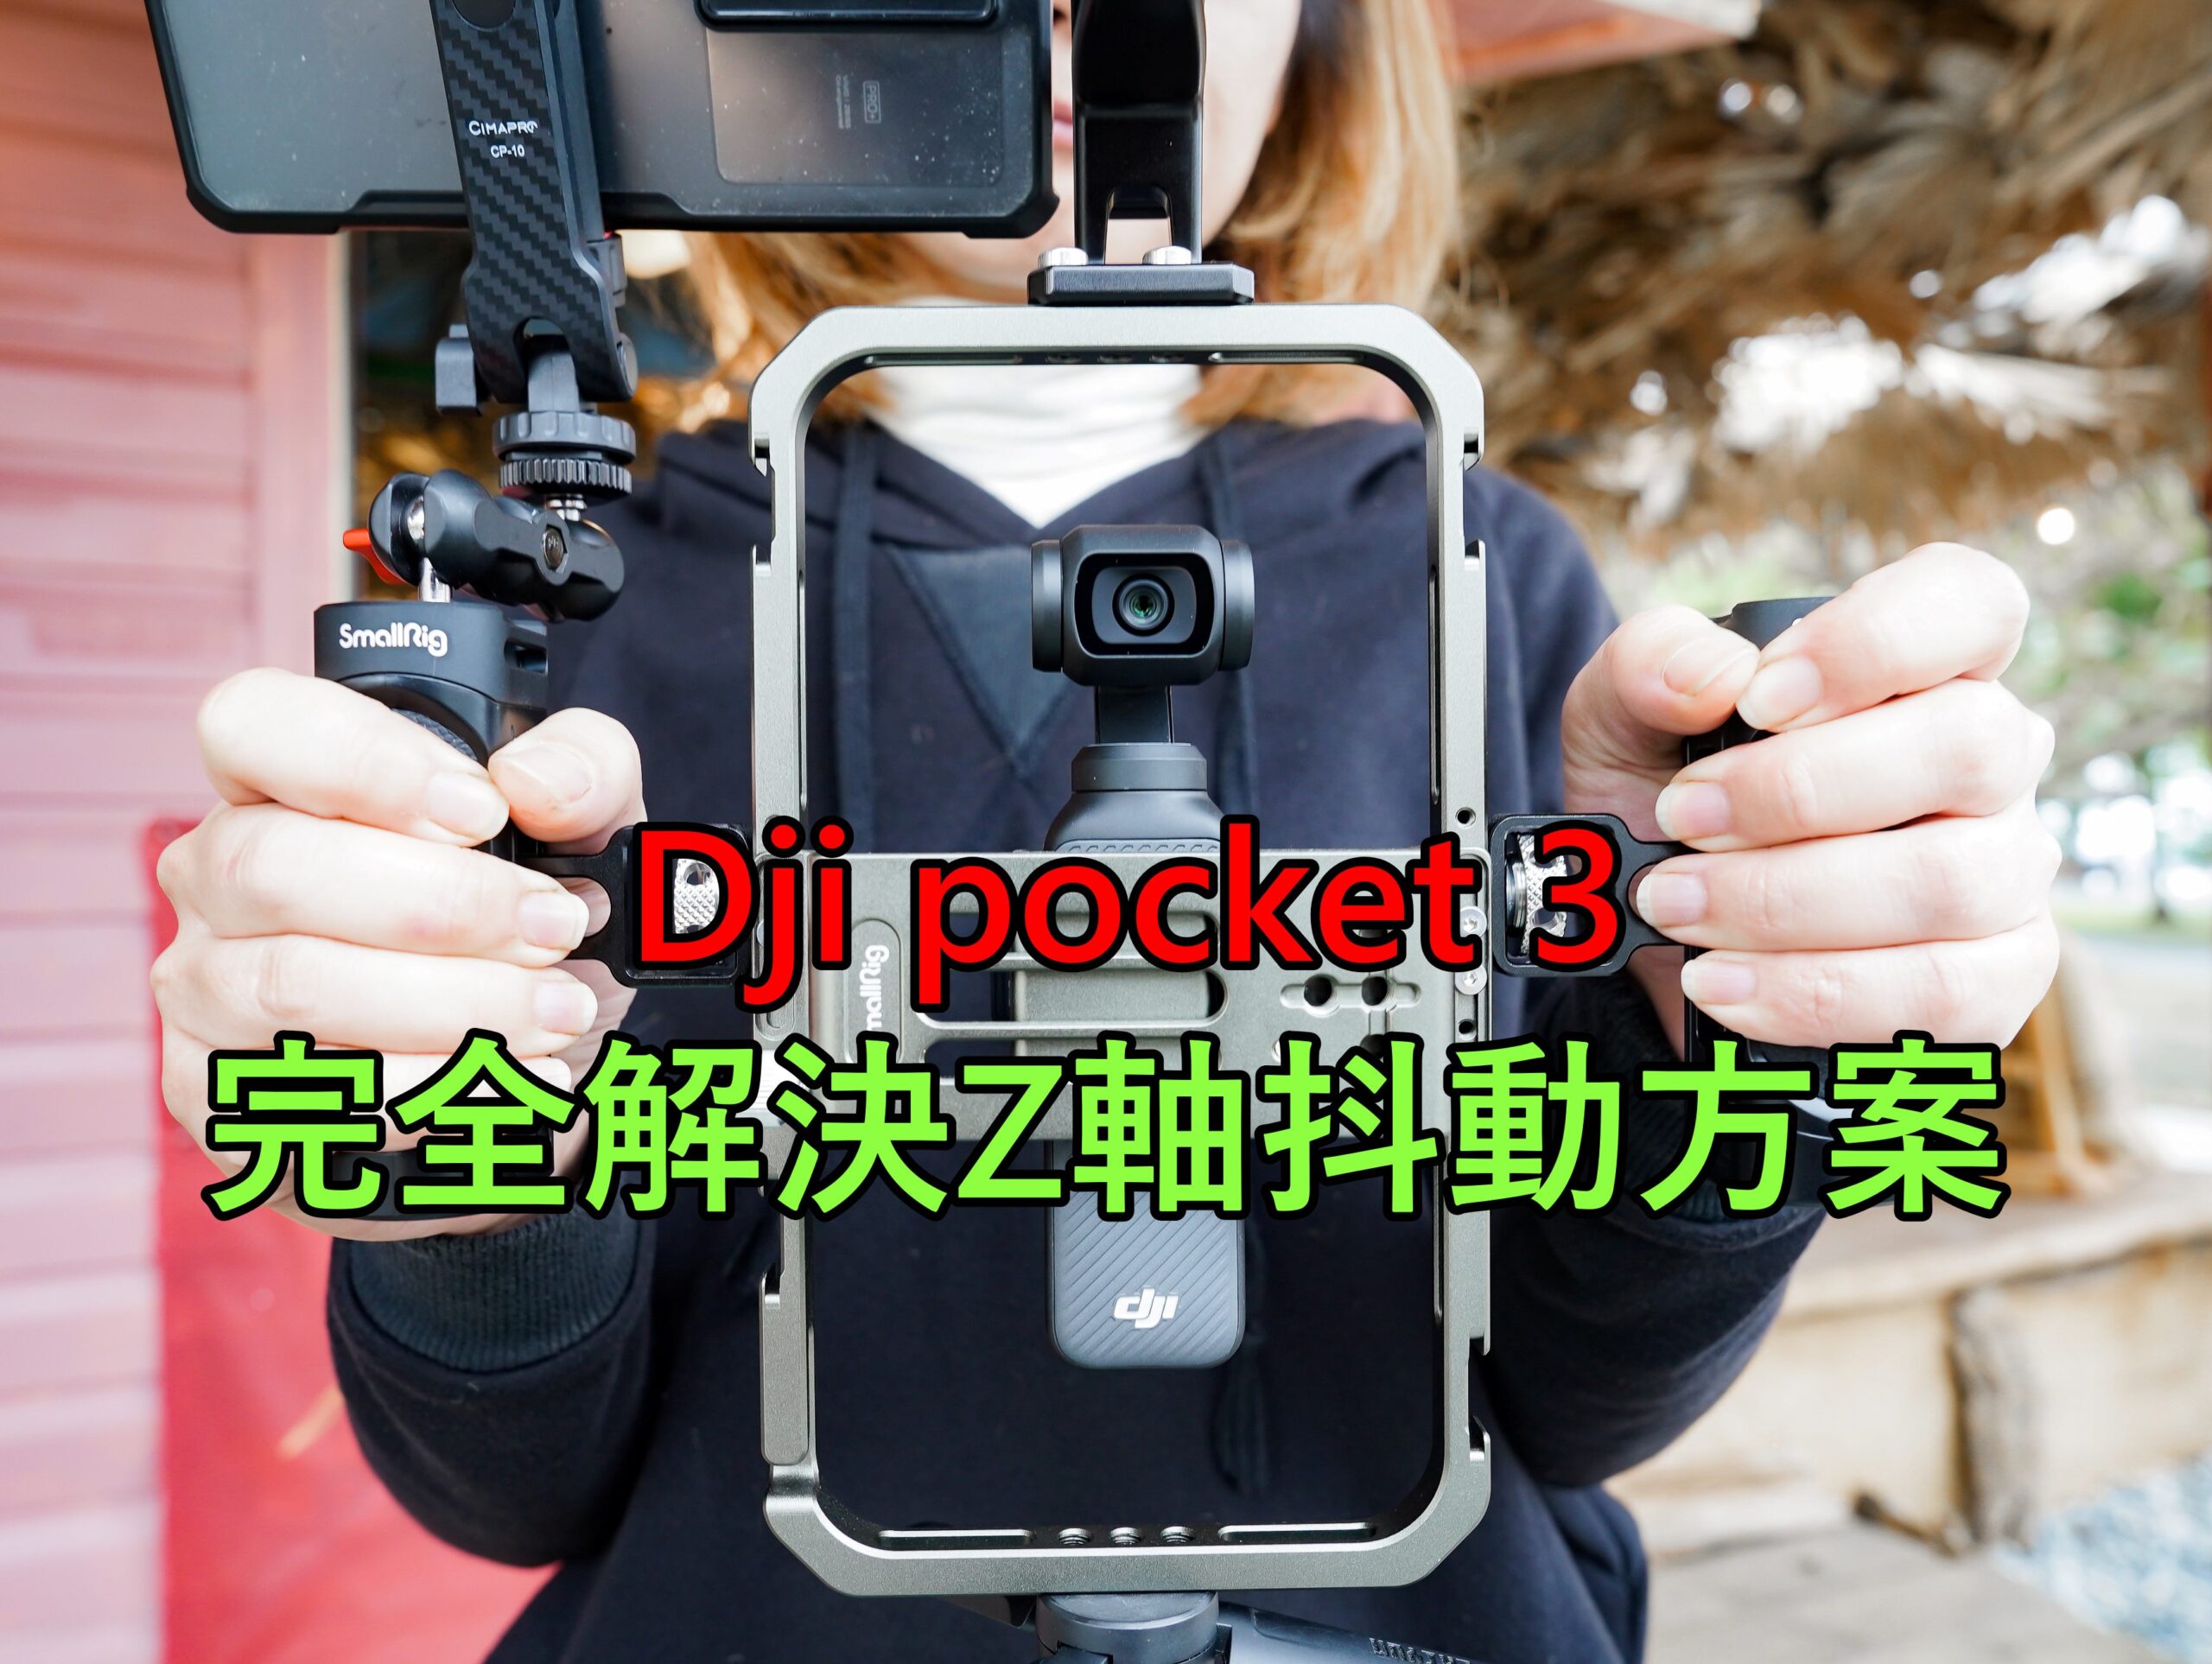 [影片]大疆 Dji pocket 3 Z軸抖動解決方案 @跳躍的宅男